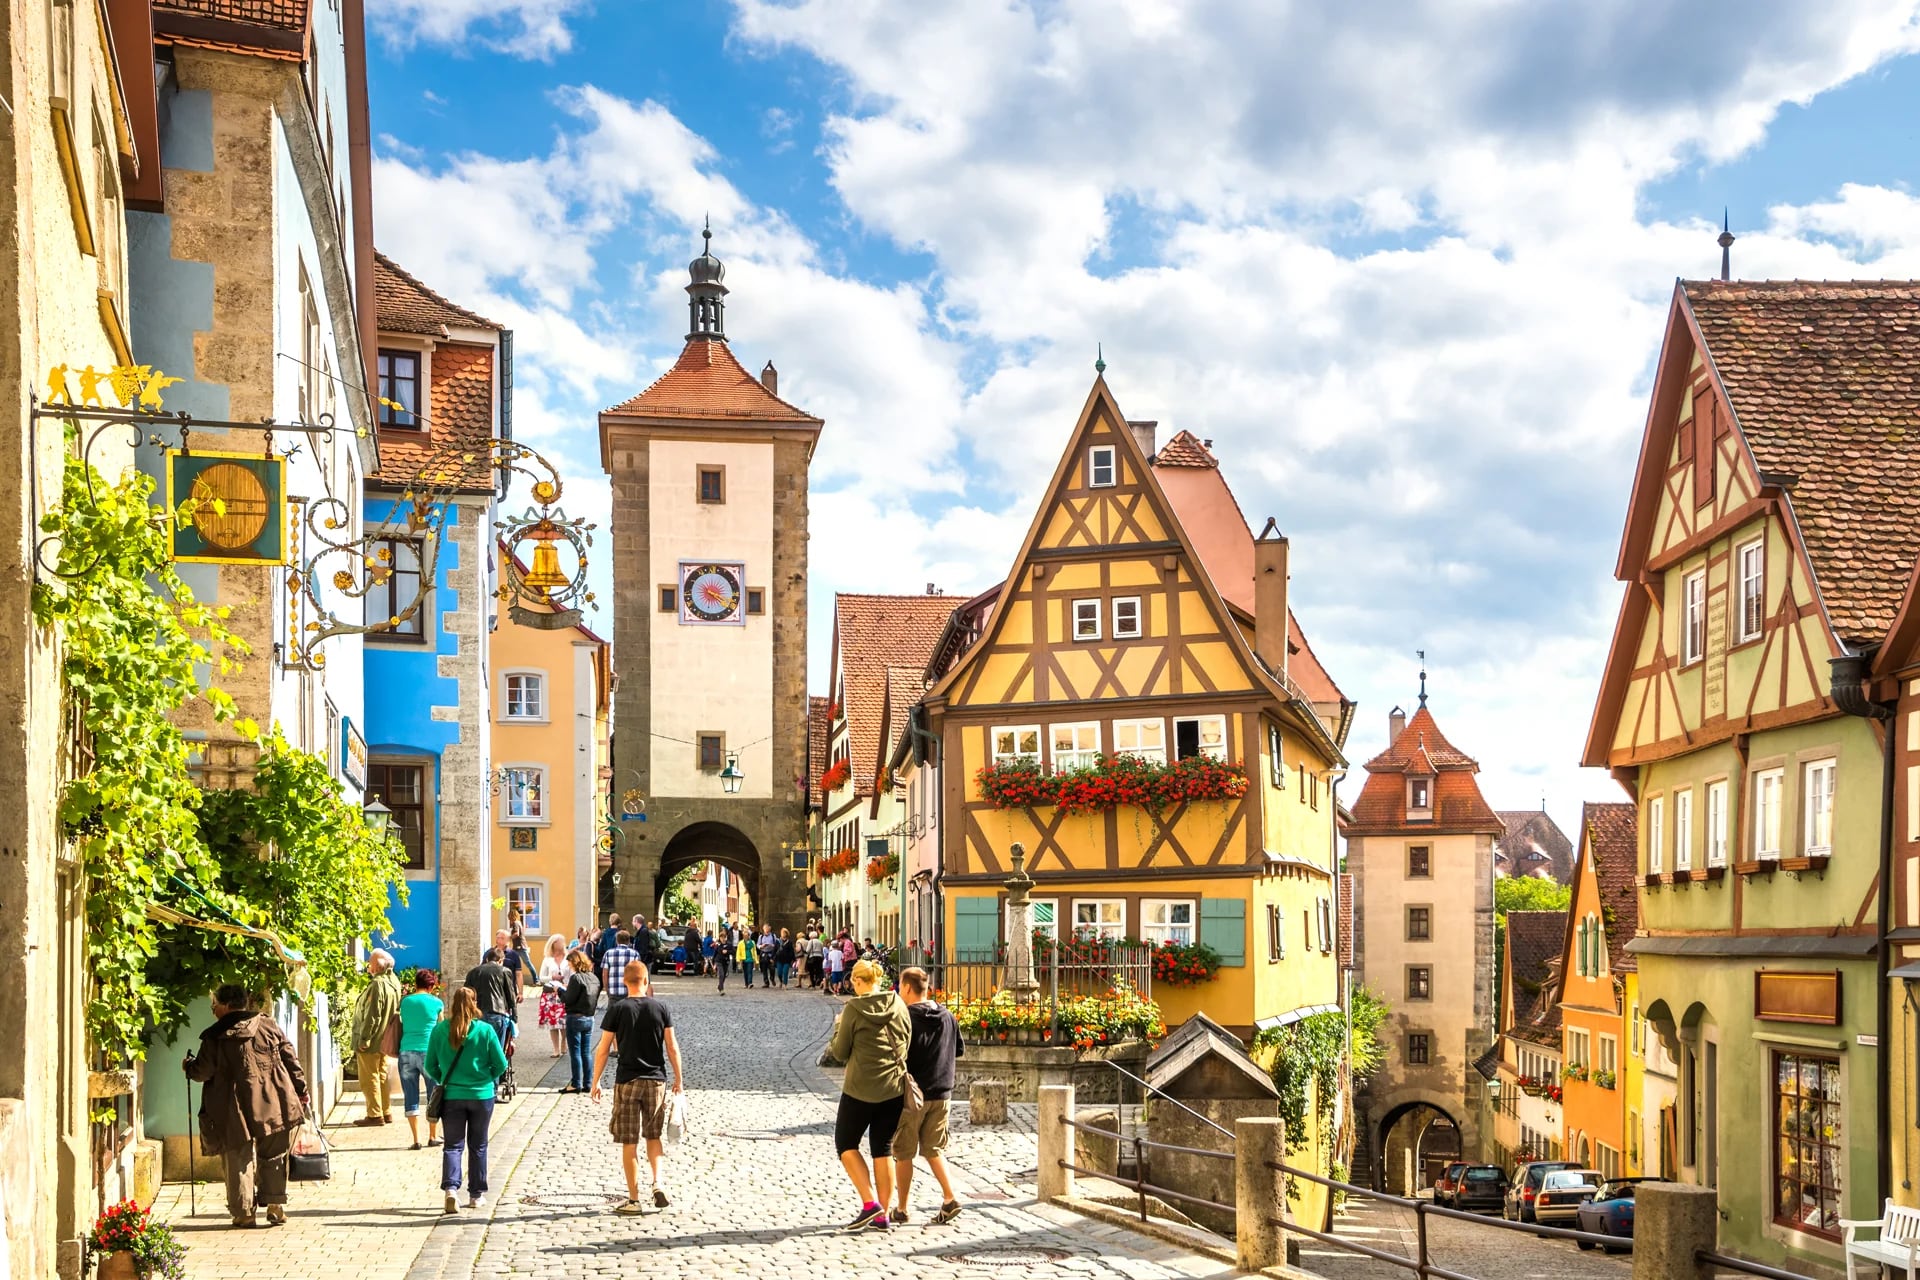 En Rothenburg ob der Tauber, Alemania, los turistas son transportados a la era medieval. Posee viviendas con jardines coloridos y es reconocido por la arquitectura de sus iglesias (Istock)